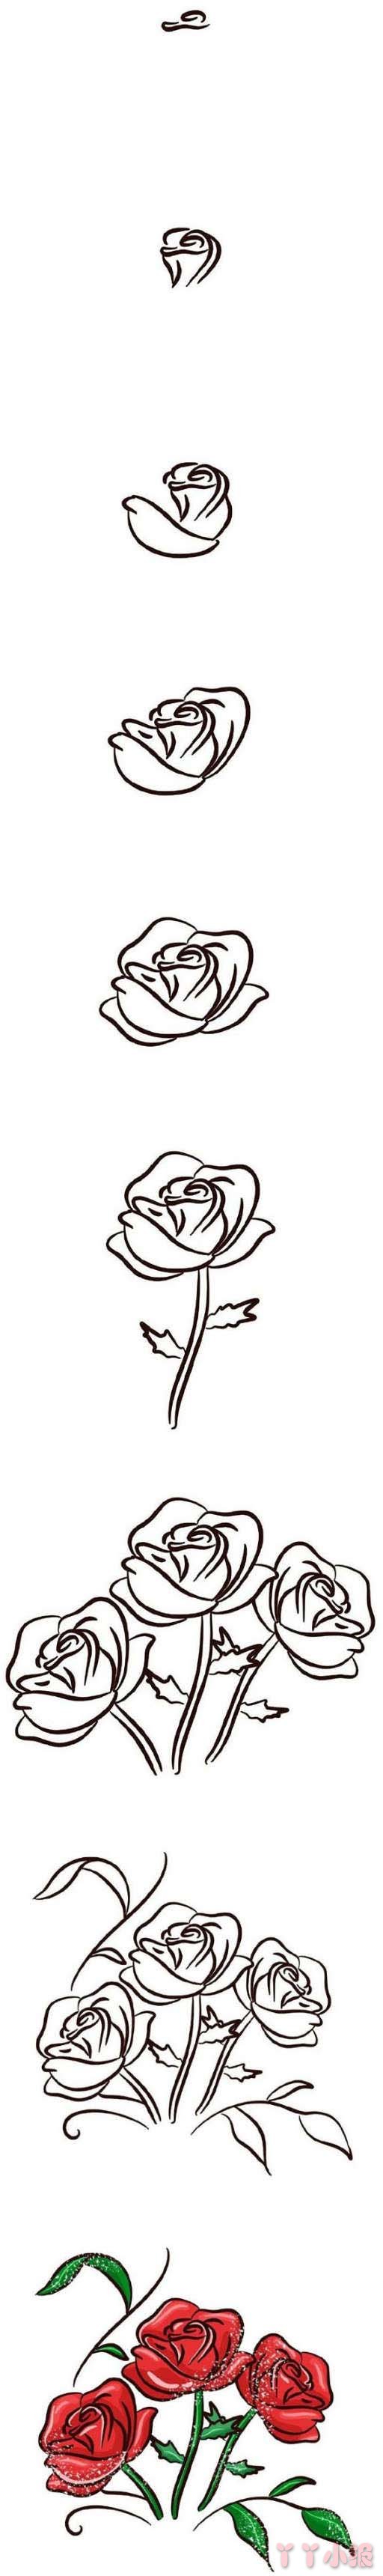 最简单漂亮玫瑰花简笔画步骤教程手绘涂色